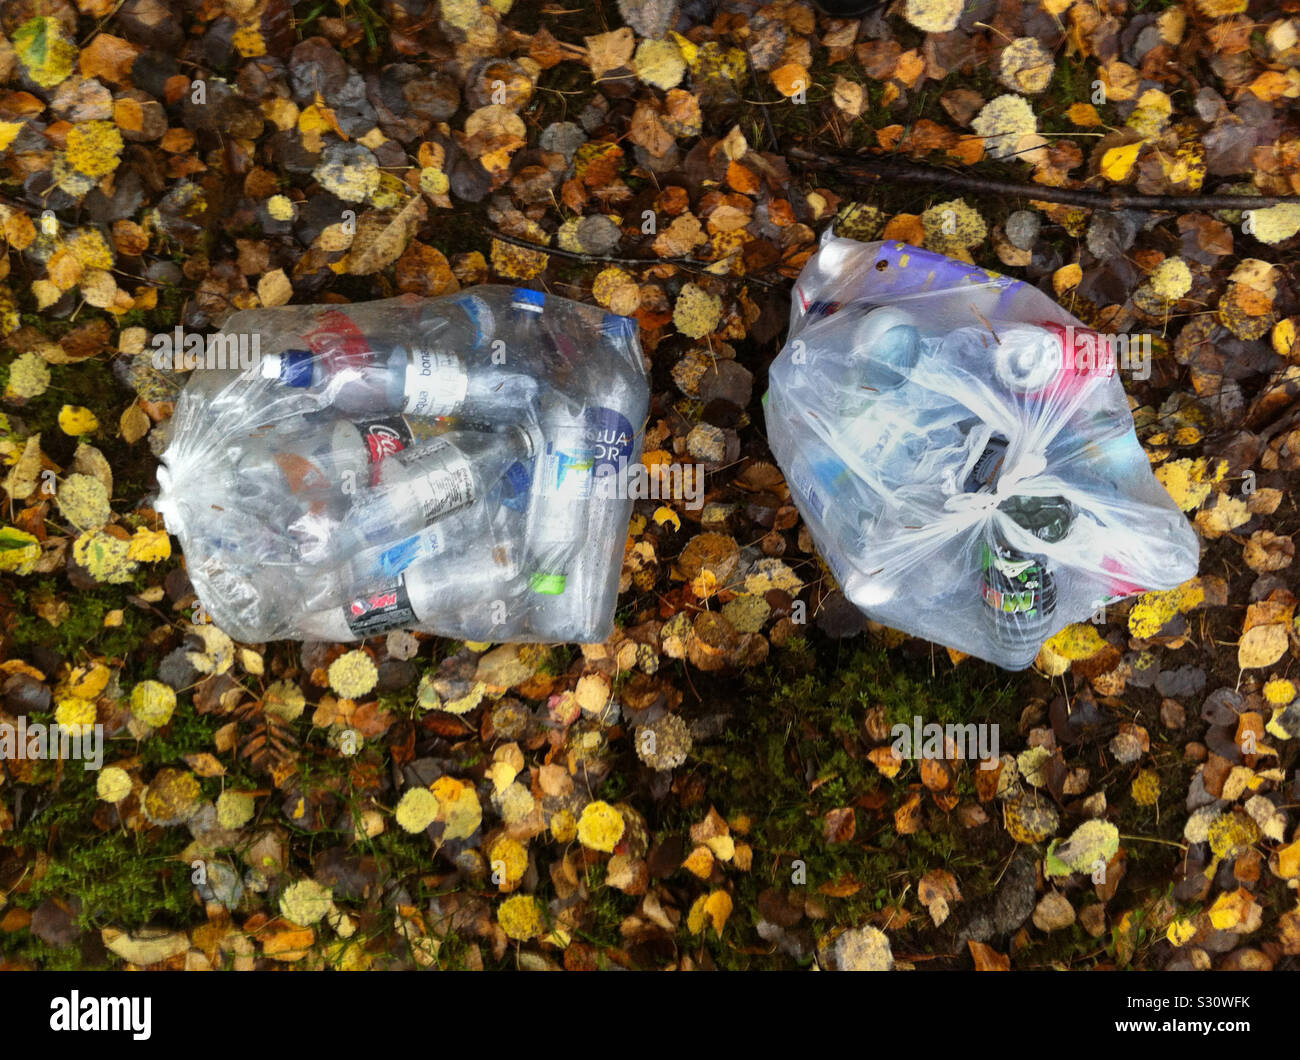 Due grandi sacchi pieni di plastica le bottiglie in PET e lattine di alluminio da riciclare, circondato da foresta rurale con fogliame di autunno sul terreno. Stoccolma, Svezia Foto Stock